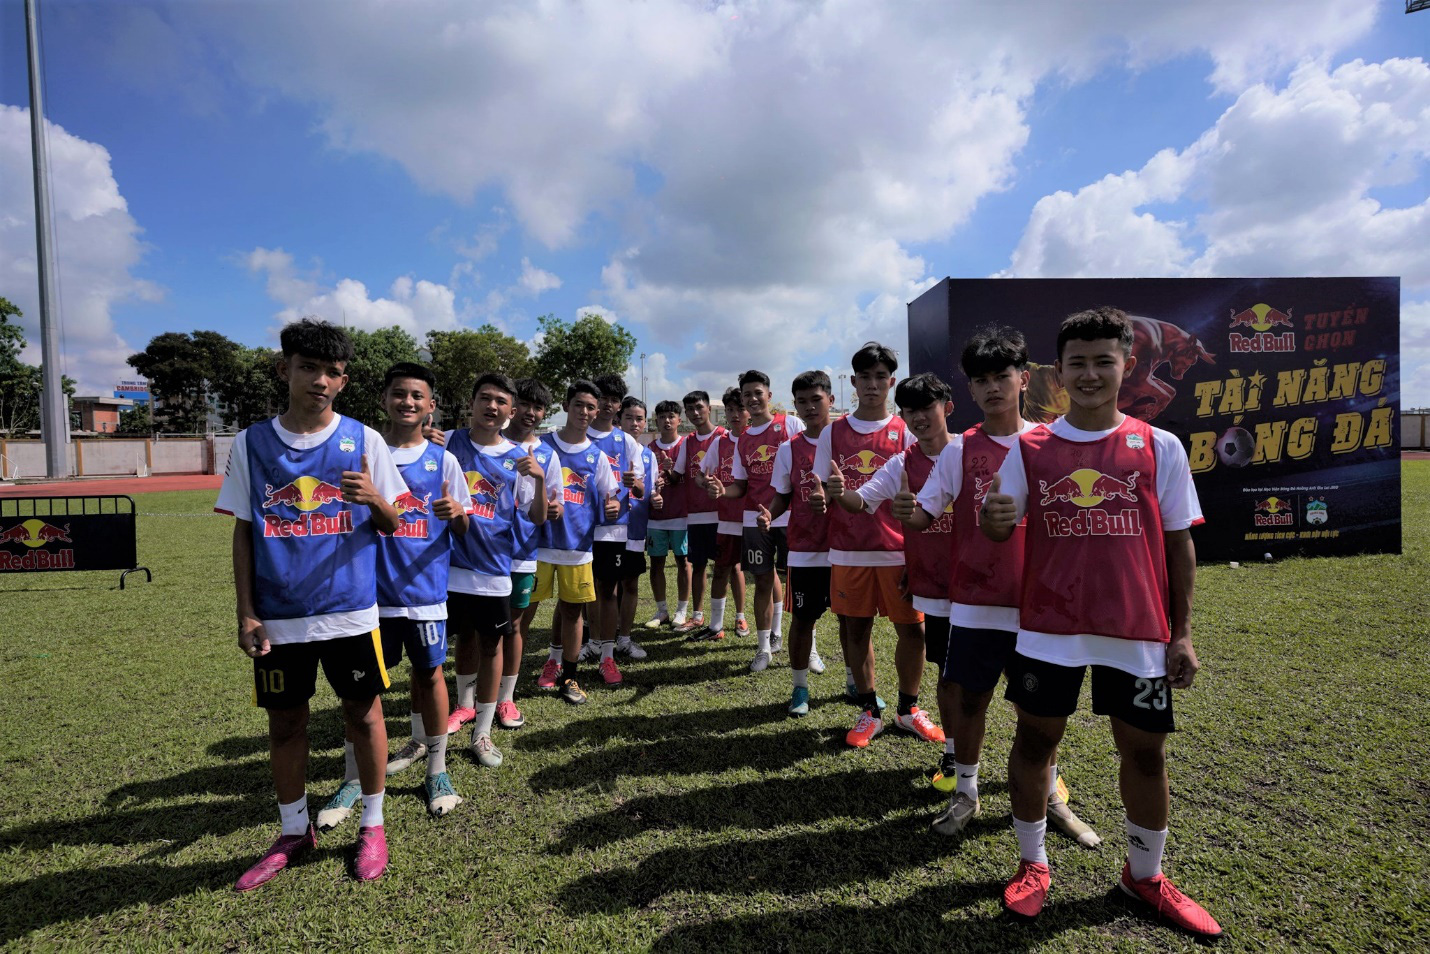 Hàng trăm cầu thủ trẻ Tiền Giang bật nội lực, chinh phục đam mê bóng đá ở vòng sơ tuyển - Ảnh 1.